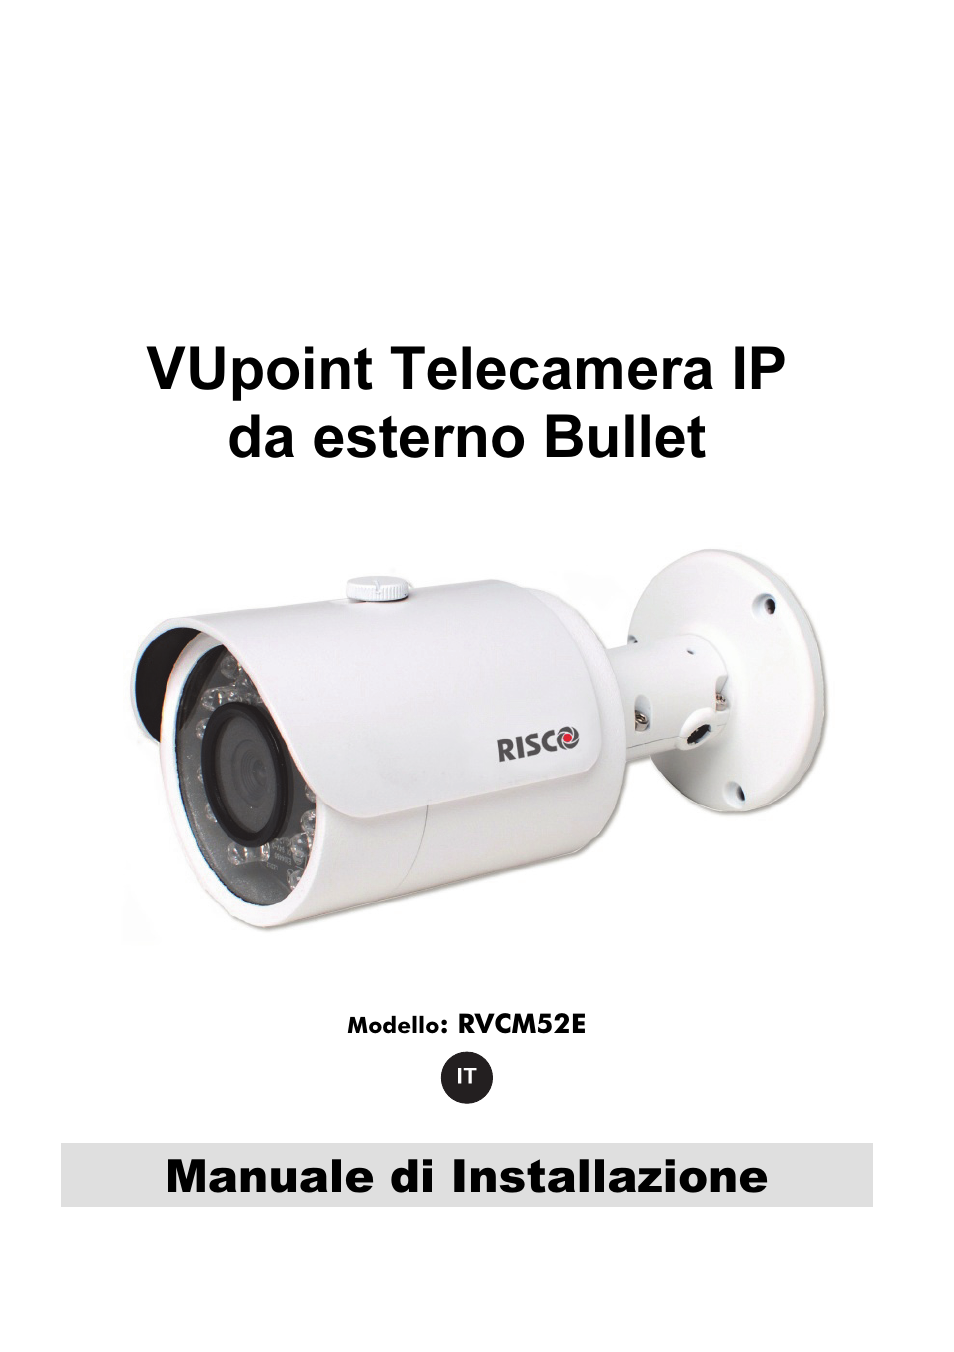 Vupoint telecamera ip da esterno bullet, Manuale di installazione | RISCO  Group VUpoint Bullet Outdoor IP Camera RVCM52E User Manual | Page 41 / 76